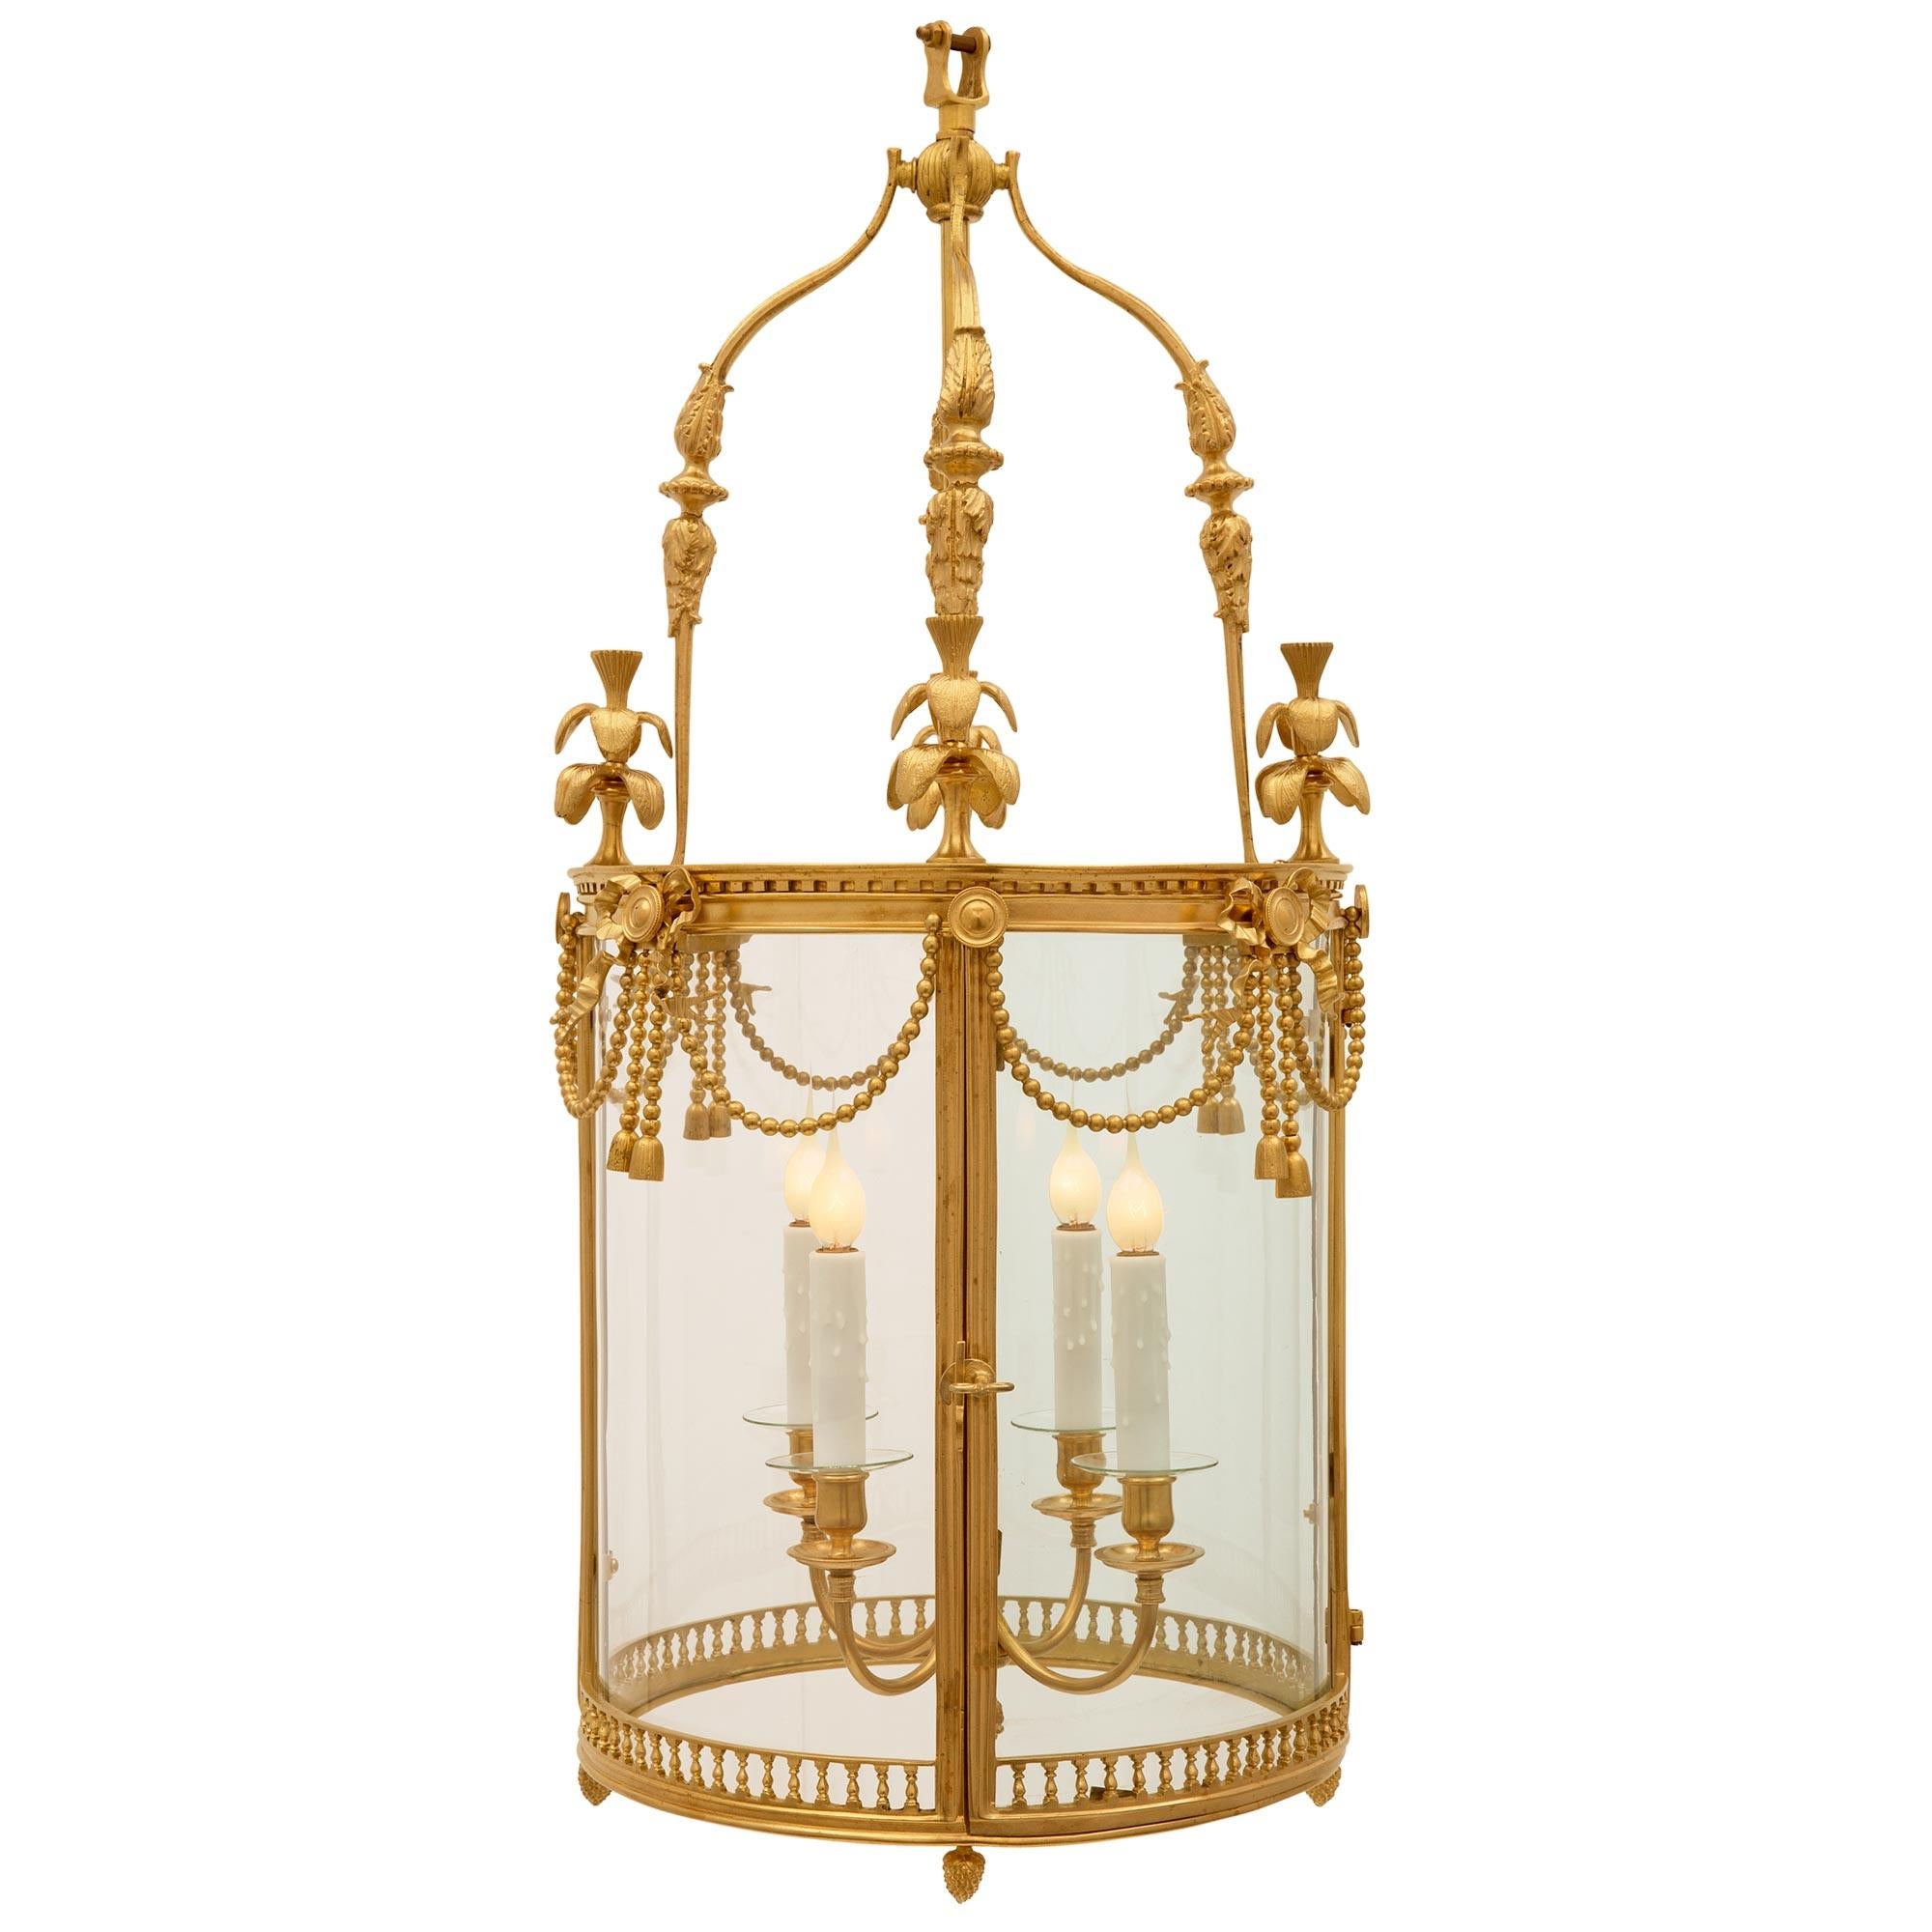 Une charmante et extrêmement décorative lanterne française du 19ème siècle de style Louis XVI en bronze doré et verre. La lanterne présente une fine bande percée en forme de balustre entourée de bronze doré à la base, avec quatre fines finales en